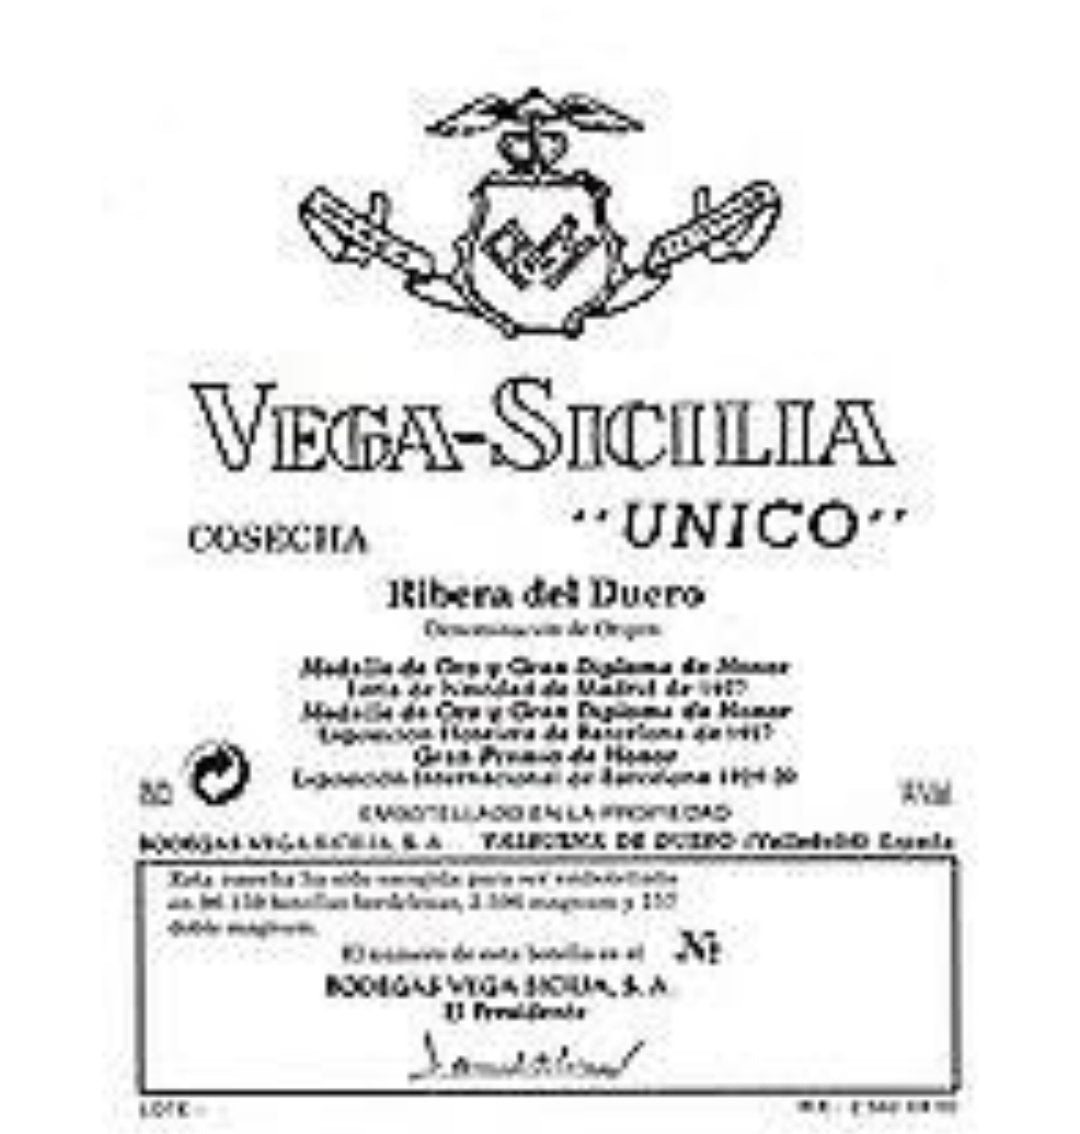 Vega Sicilia Unico 2002